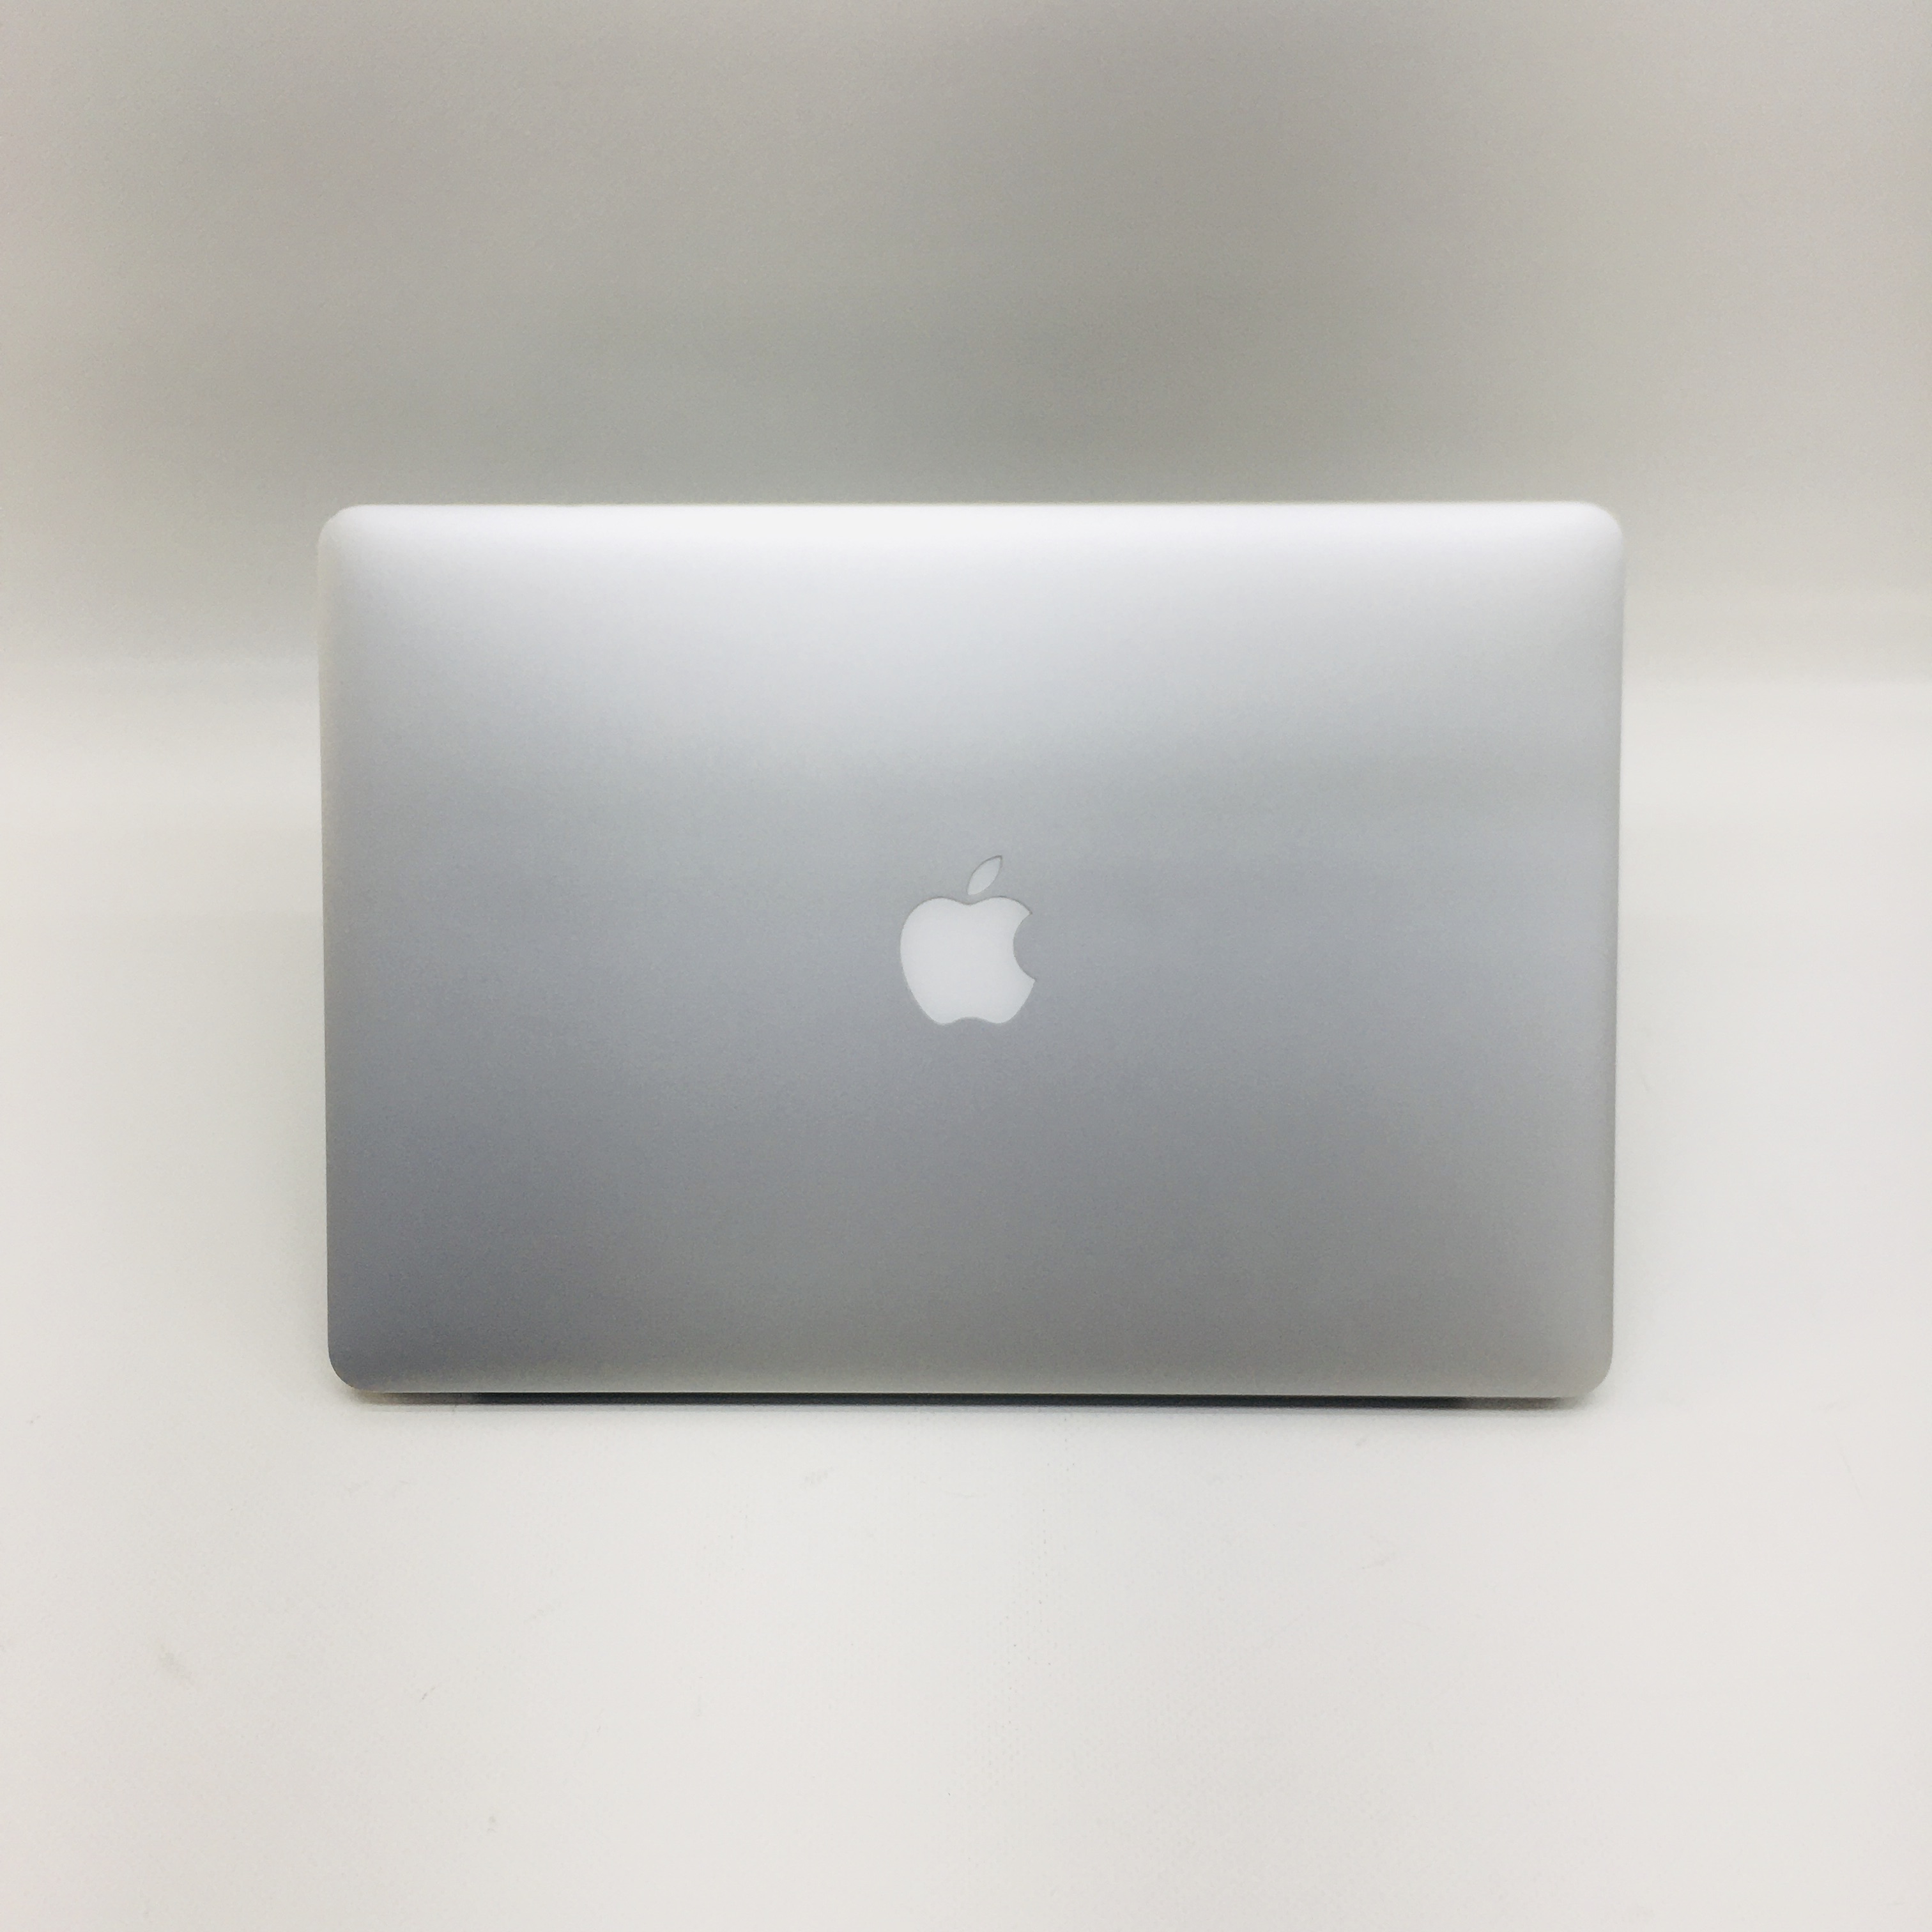 MacBook Pro Retina 15" Mid 2015 (Intel Quad-Core i7 2.2 GHz 16 GB RAM 1 TB SSD), Intel Quad-Core i7 2.2 GHz, 16 GB RAM, 1 TB SSD, image 4